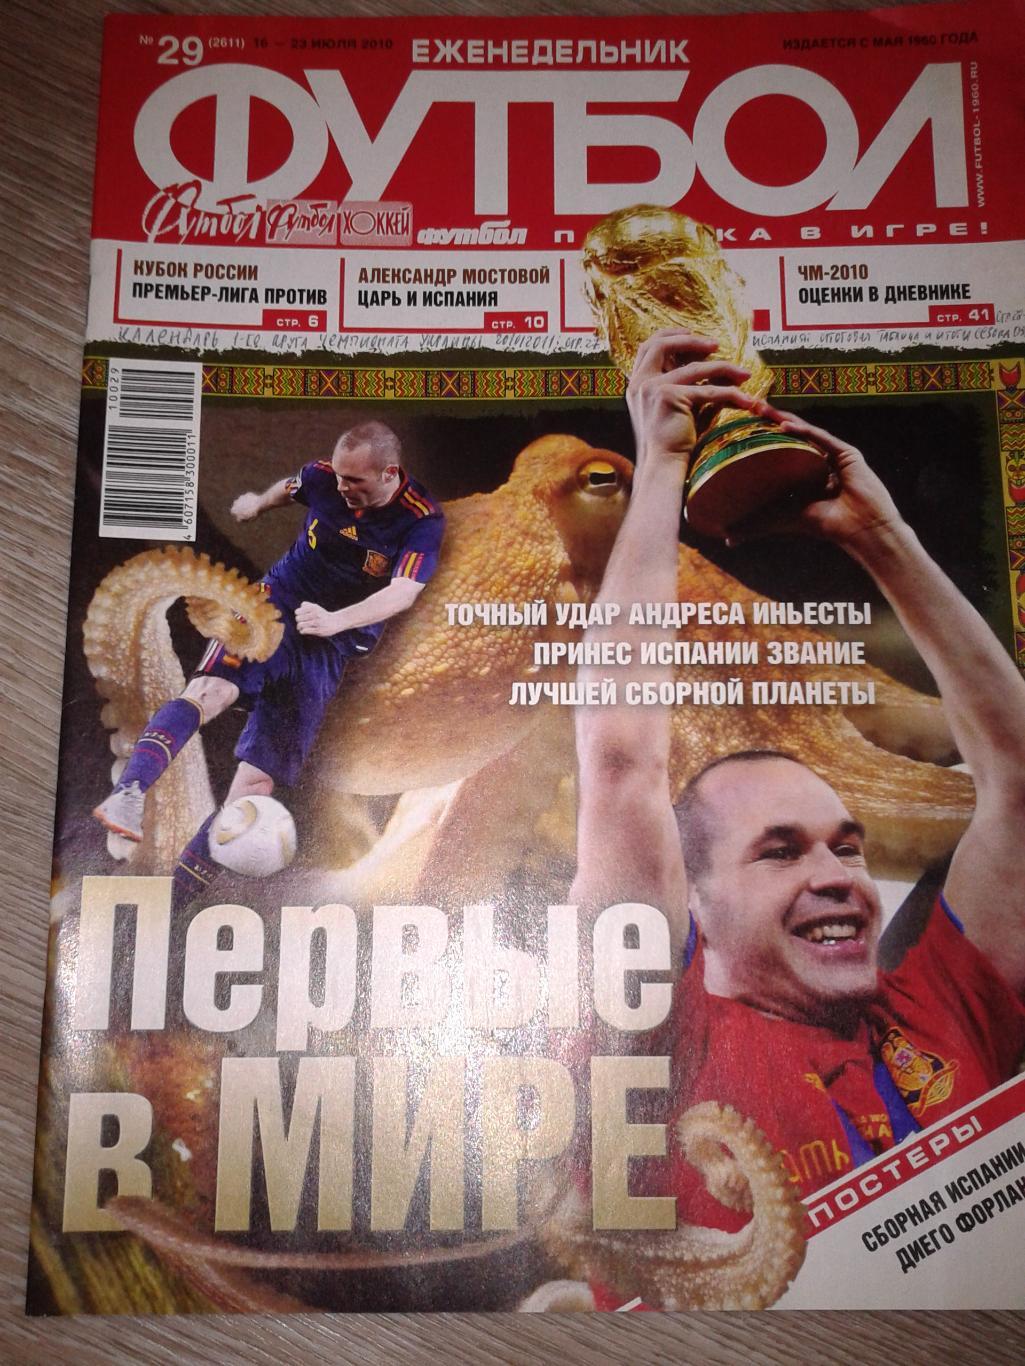 2010 Еженедельник Футбол №29